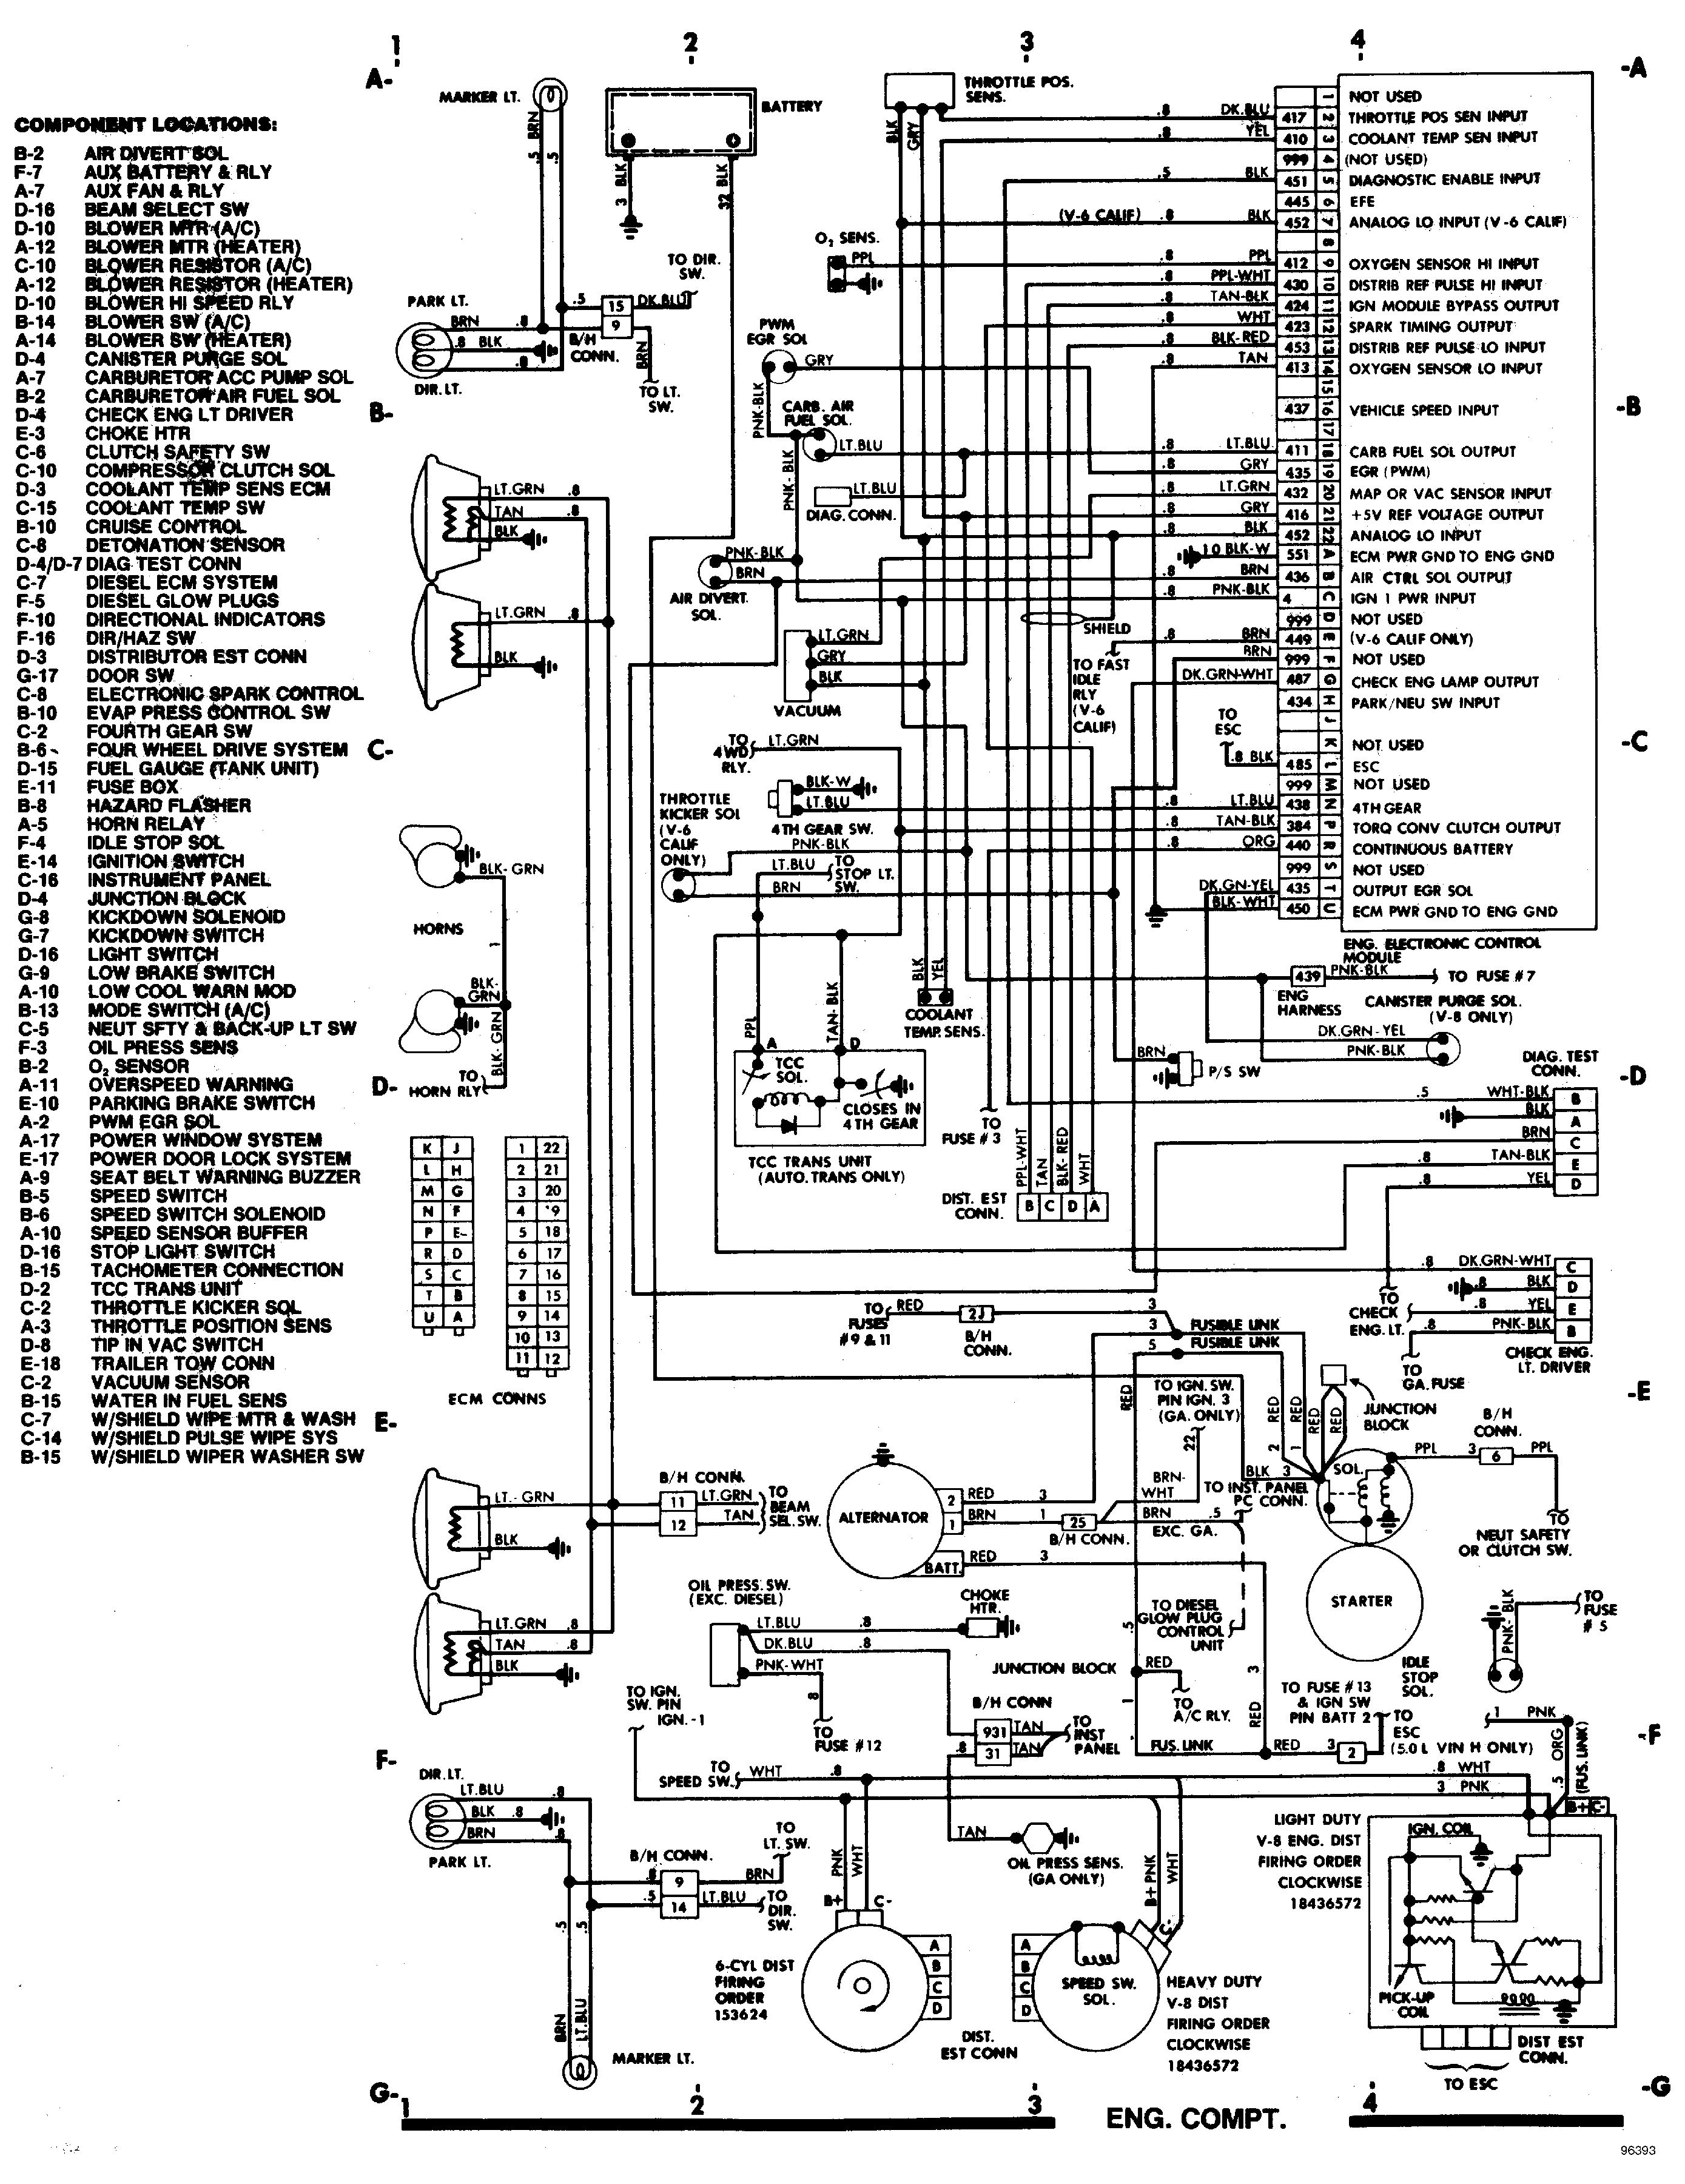 1992 mack e7 wiring diagram